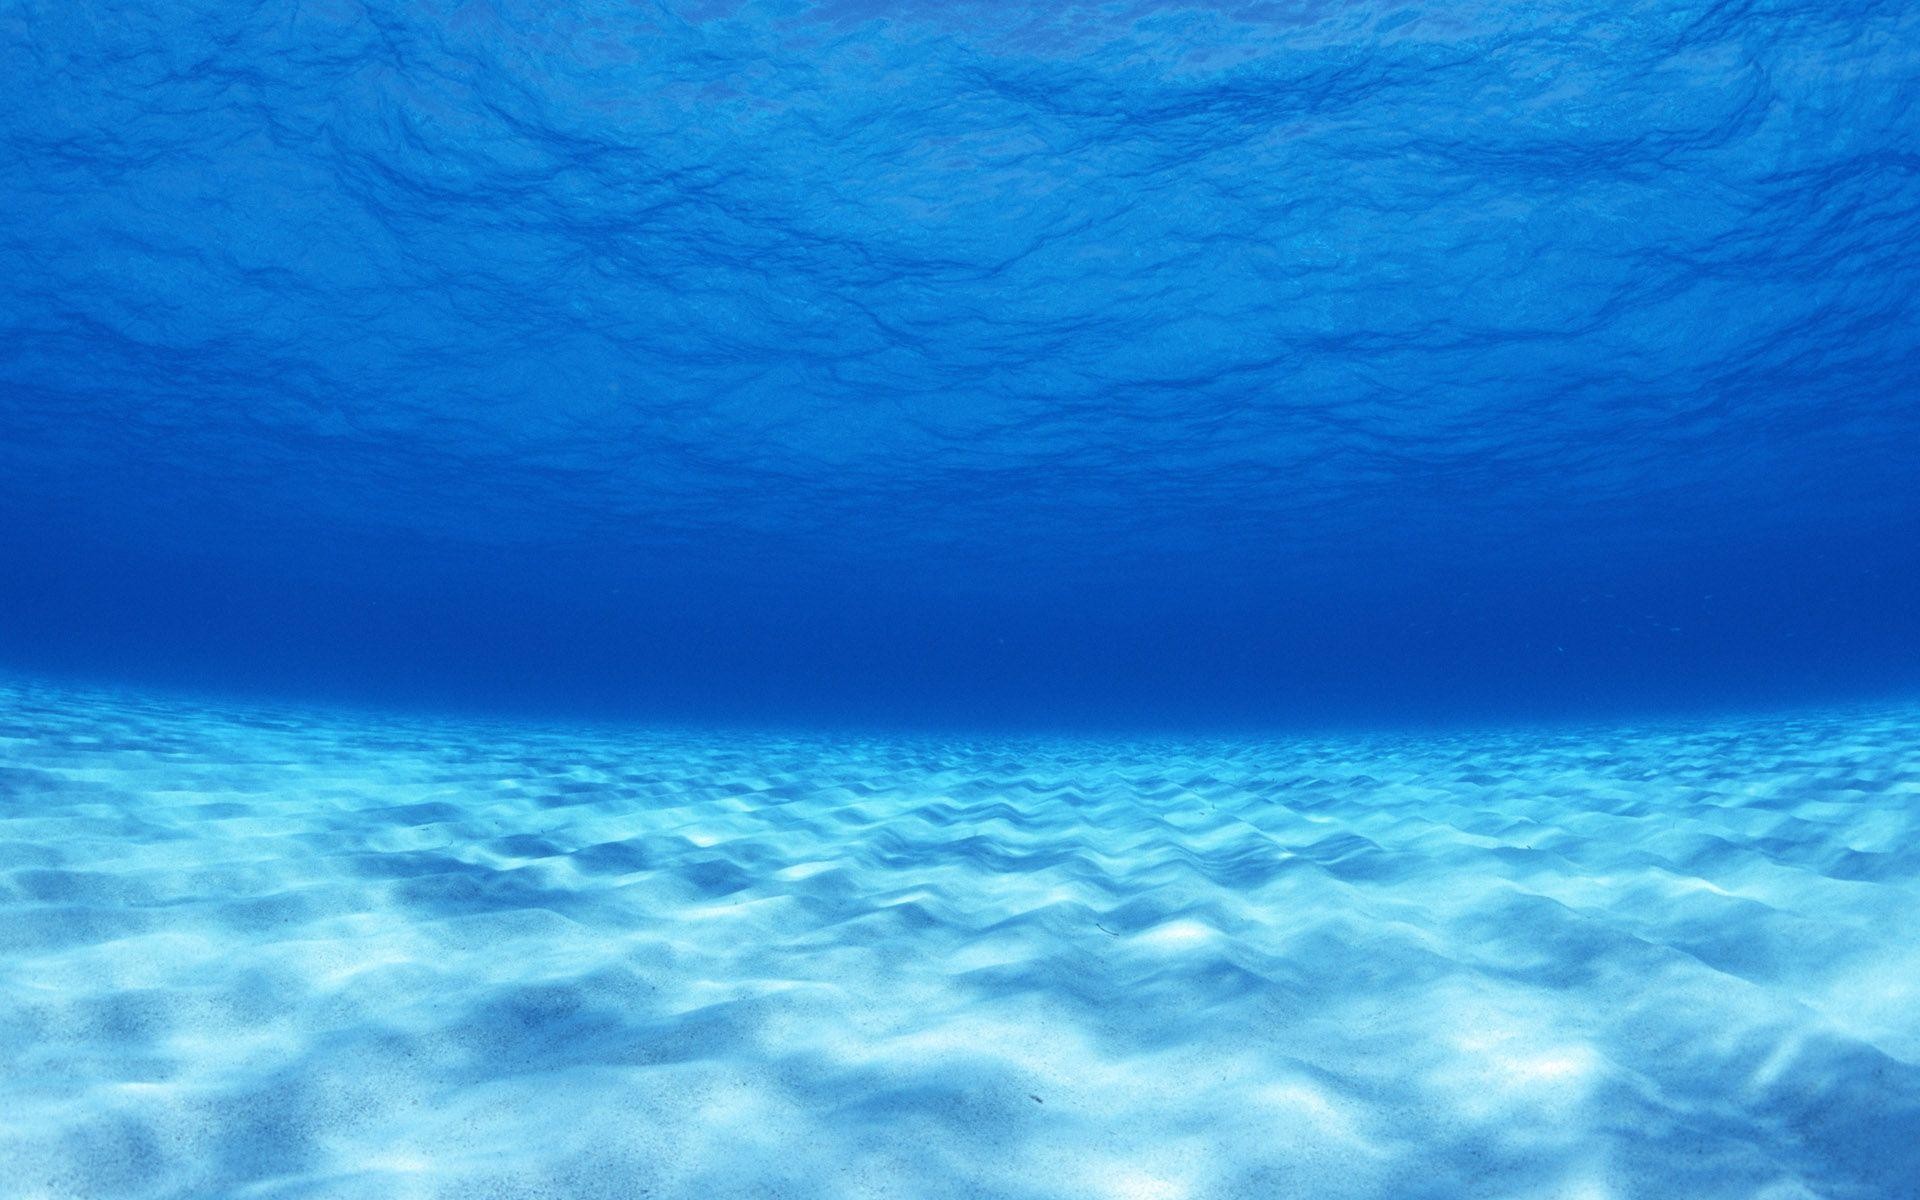 Underwater Ocean HD Wallpapers  Top Free Underwater Ocean HD Backgrounds   WallpaperAccess